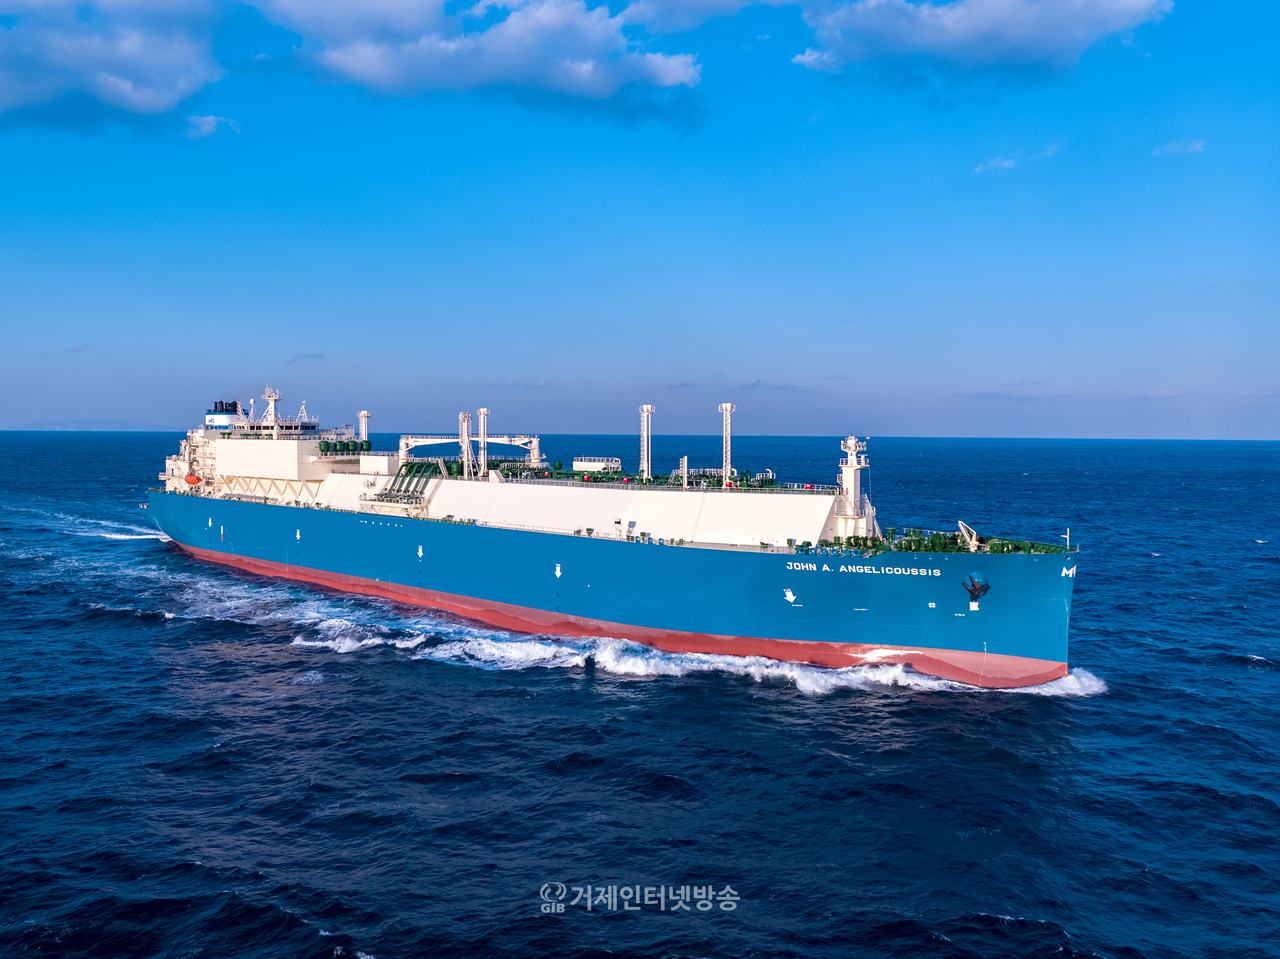 대우조선해양의 최신 기술인 축 발전기와 공기윤활시스템이 적용된 LNG운반선 항해 모습